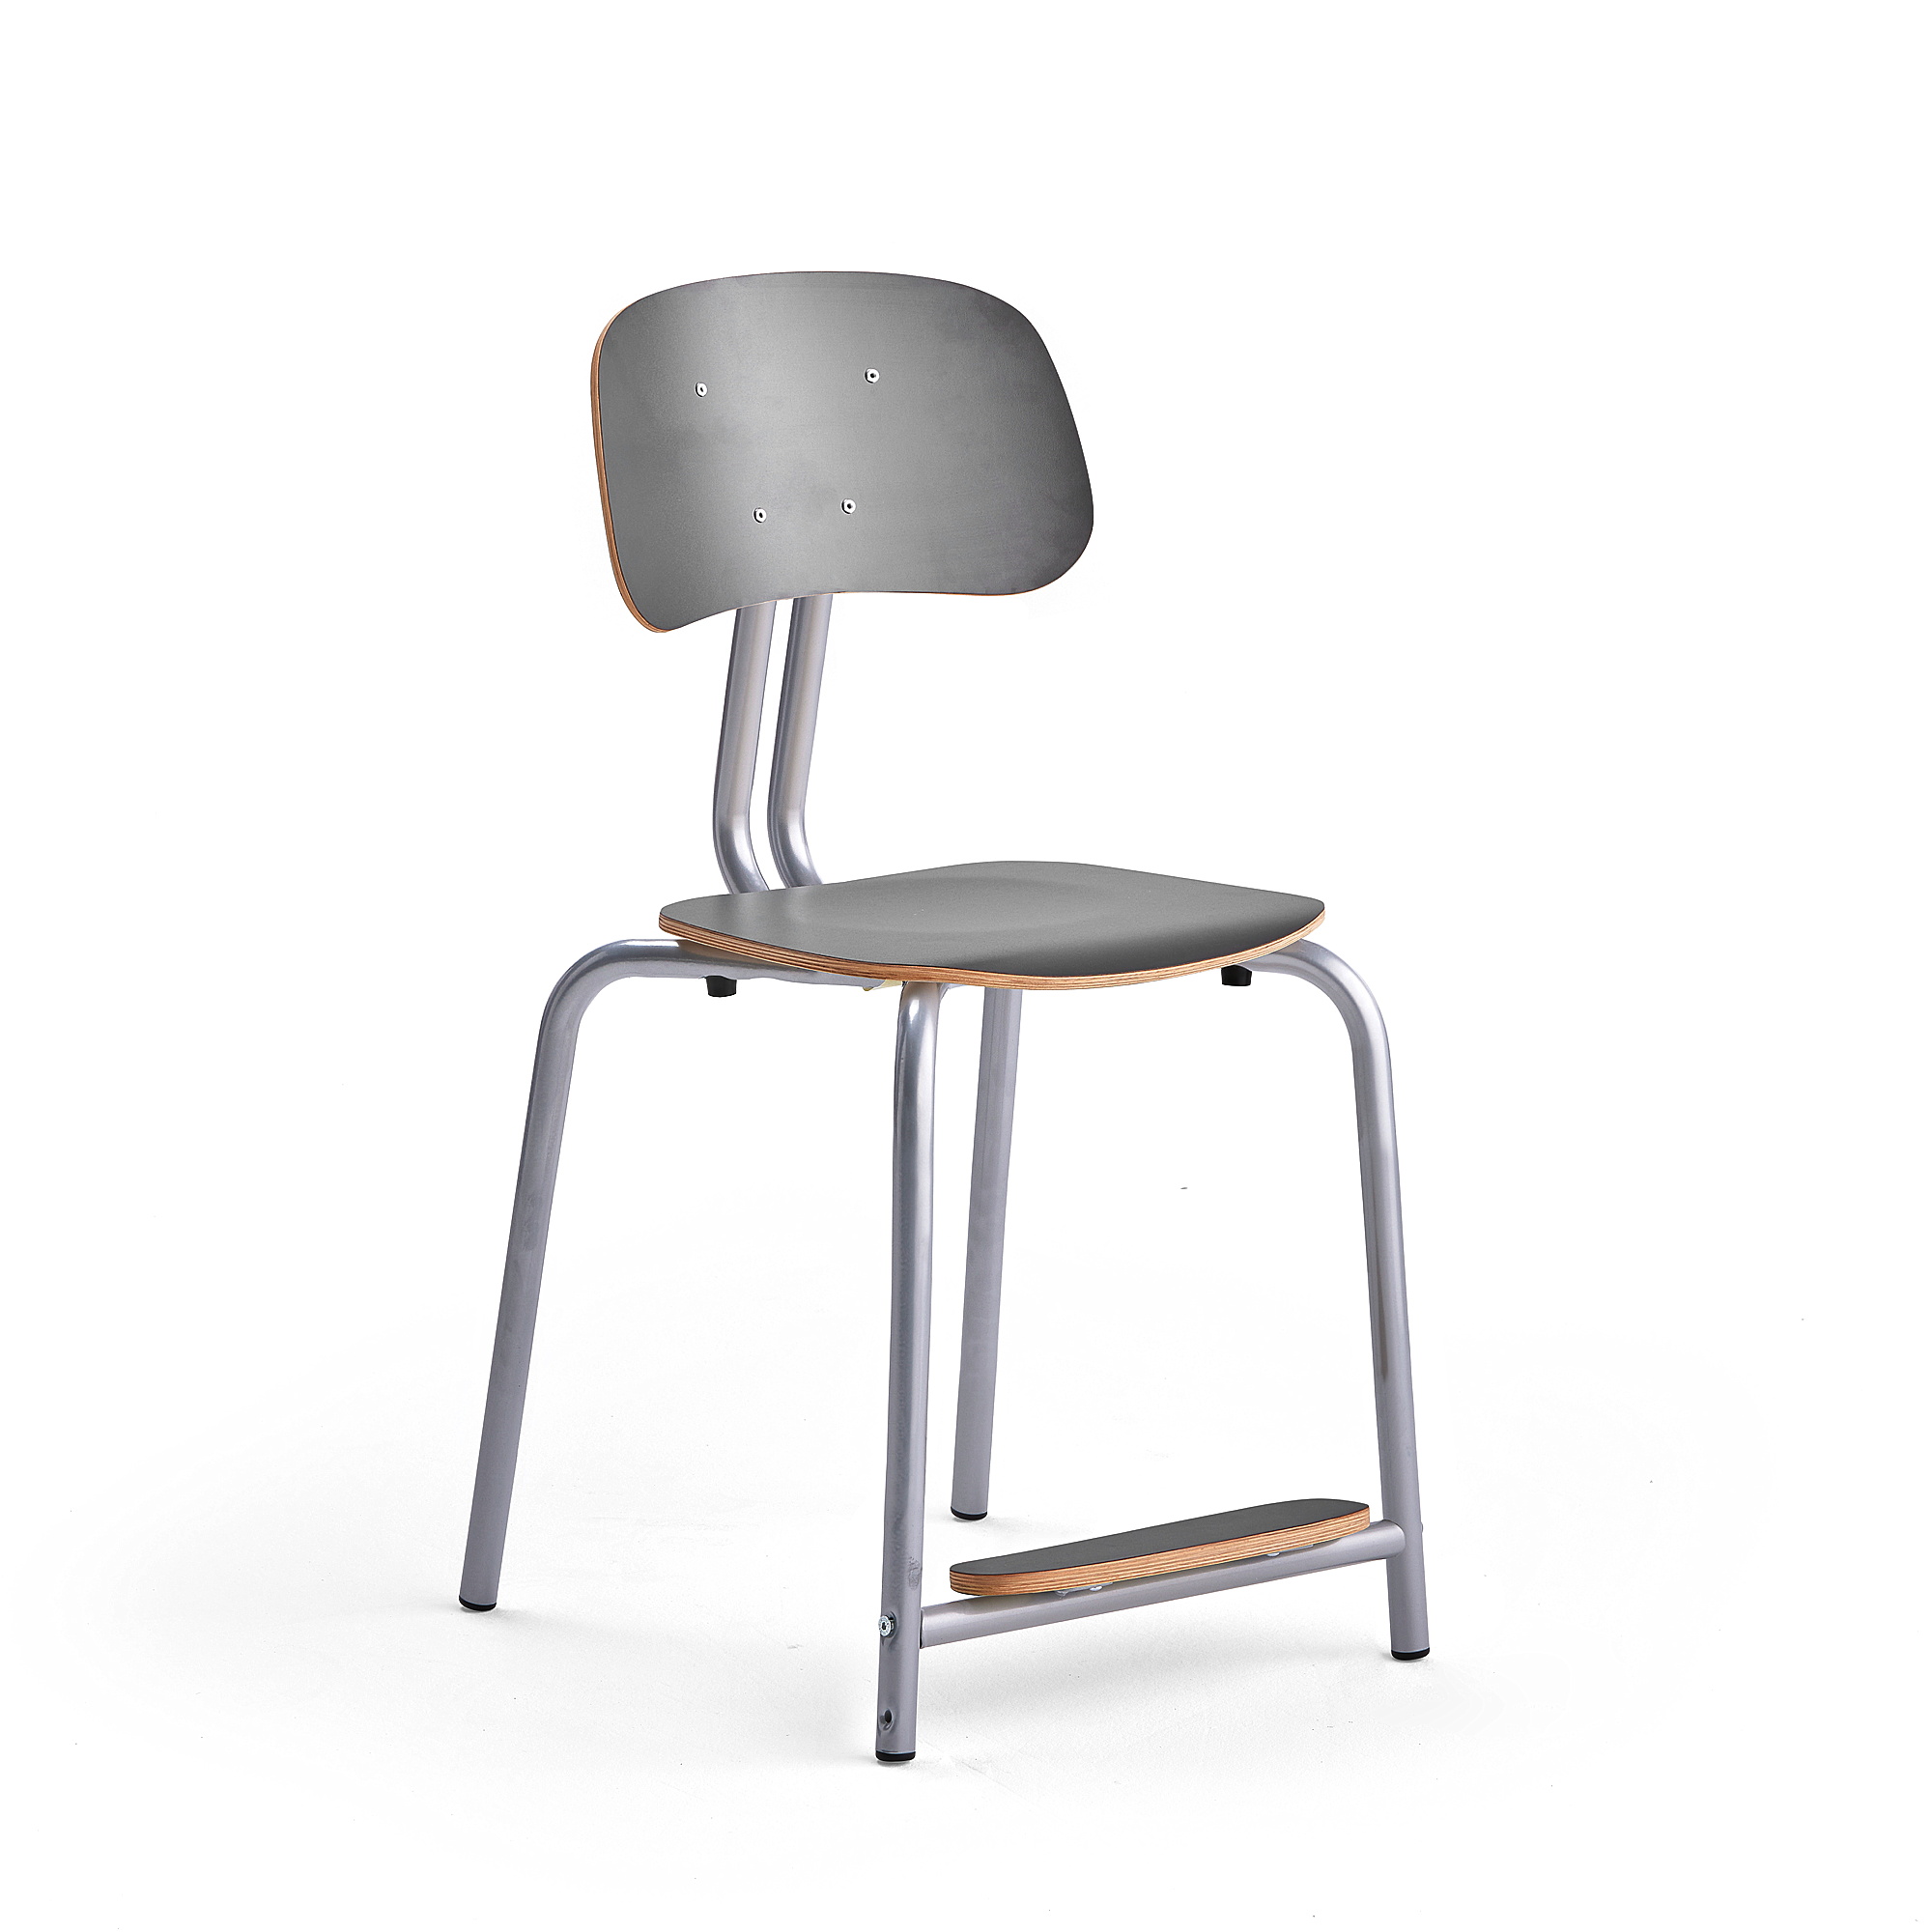 Školní židle YNGVE, 4 nohy, výška 500 mm, stříbrná/antracitově šedá